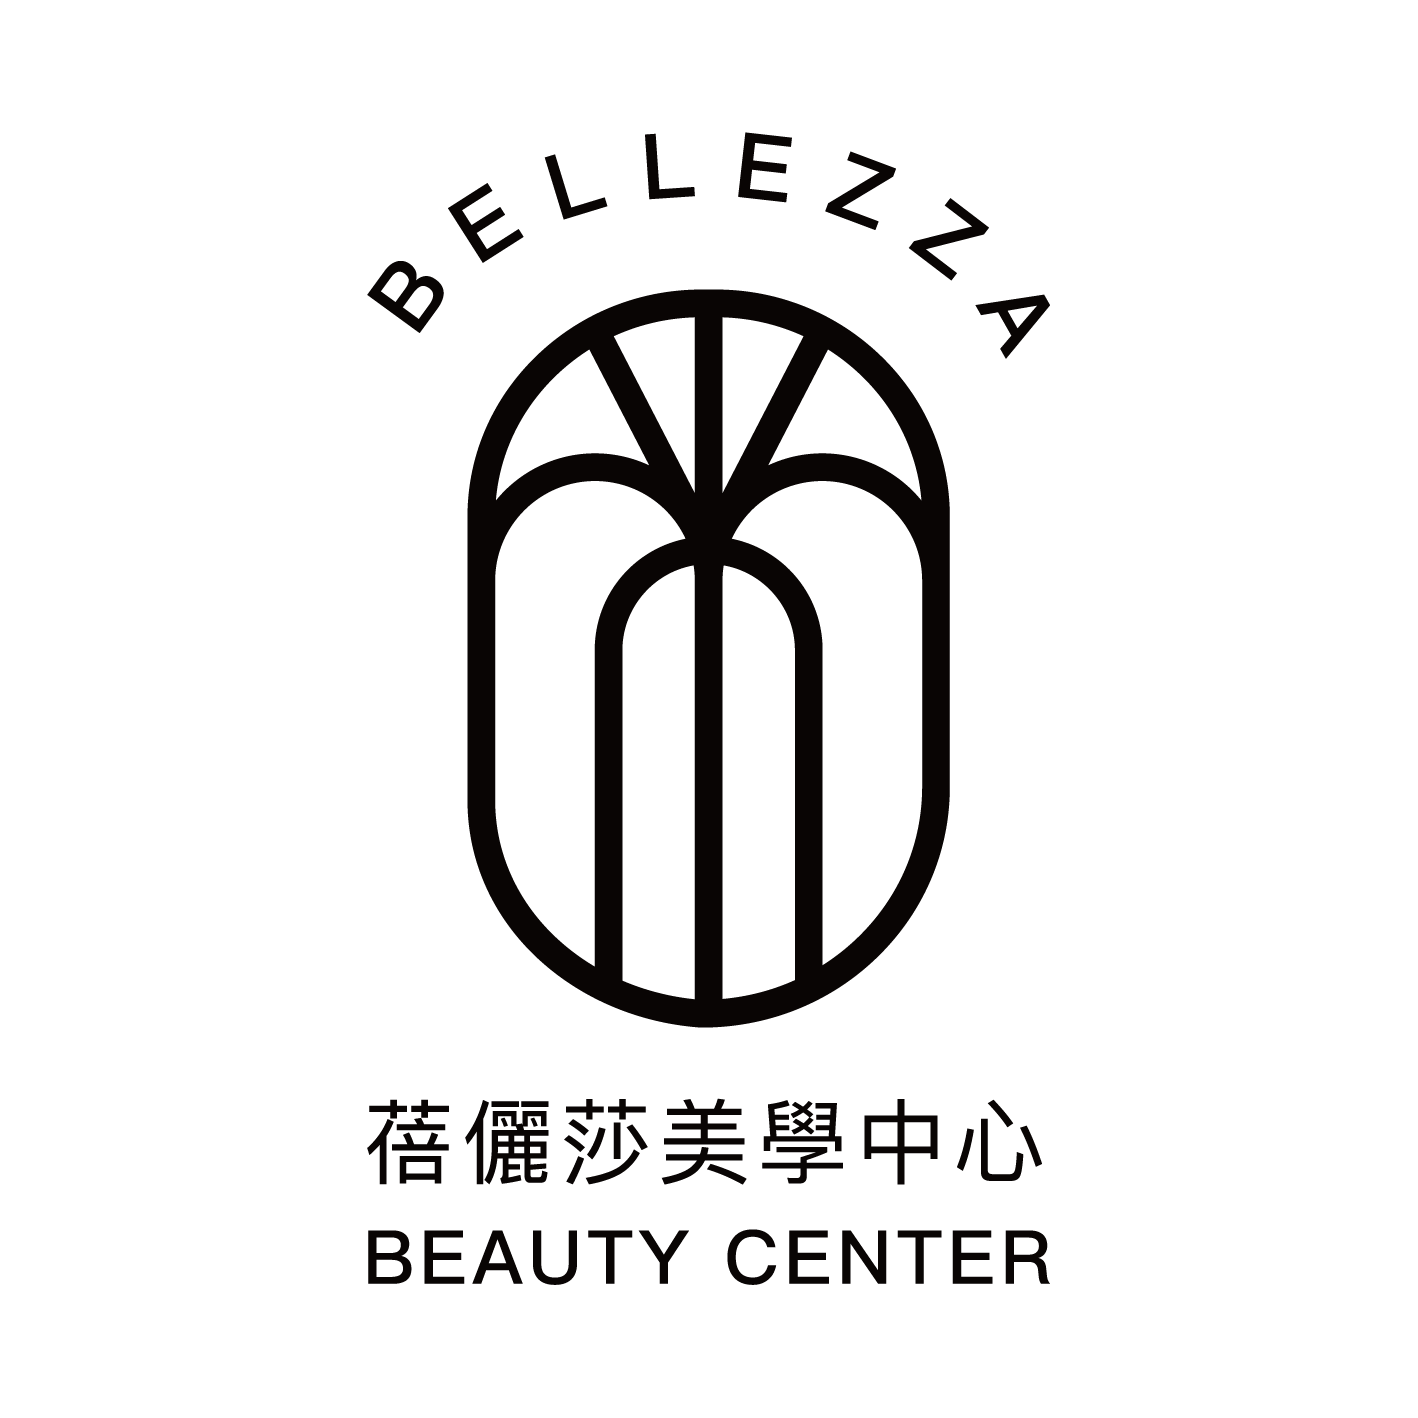 蓓儷莎美學中心 Bellezza Beauty Center